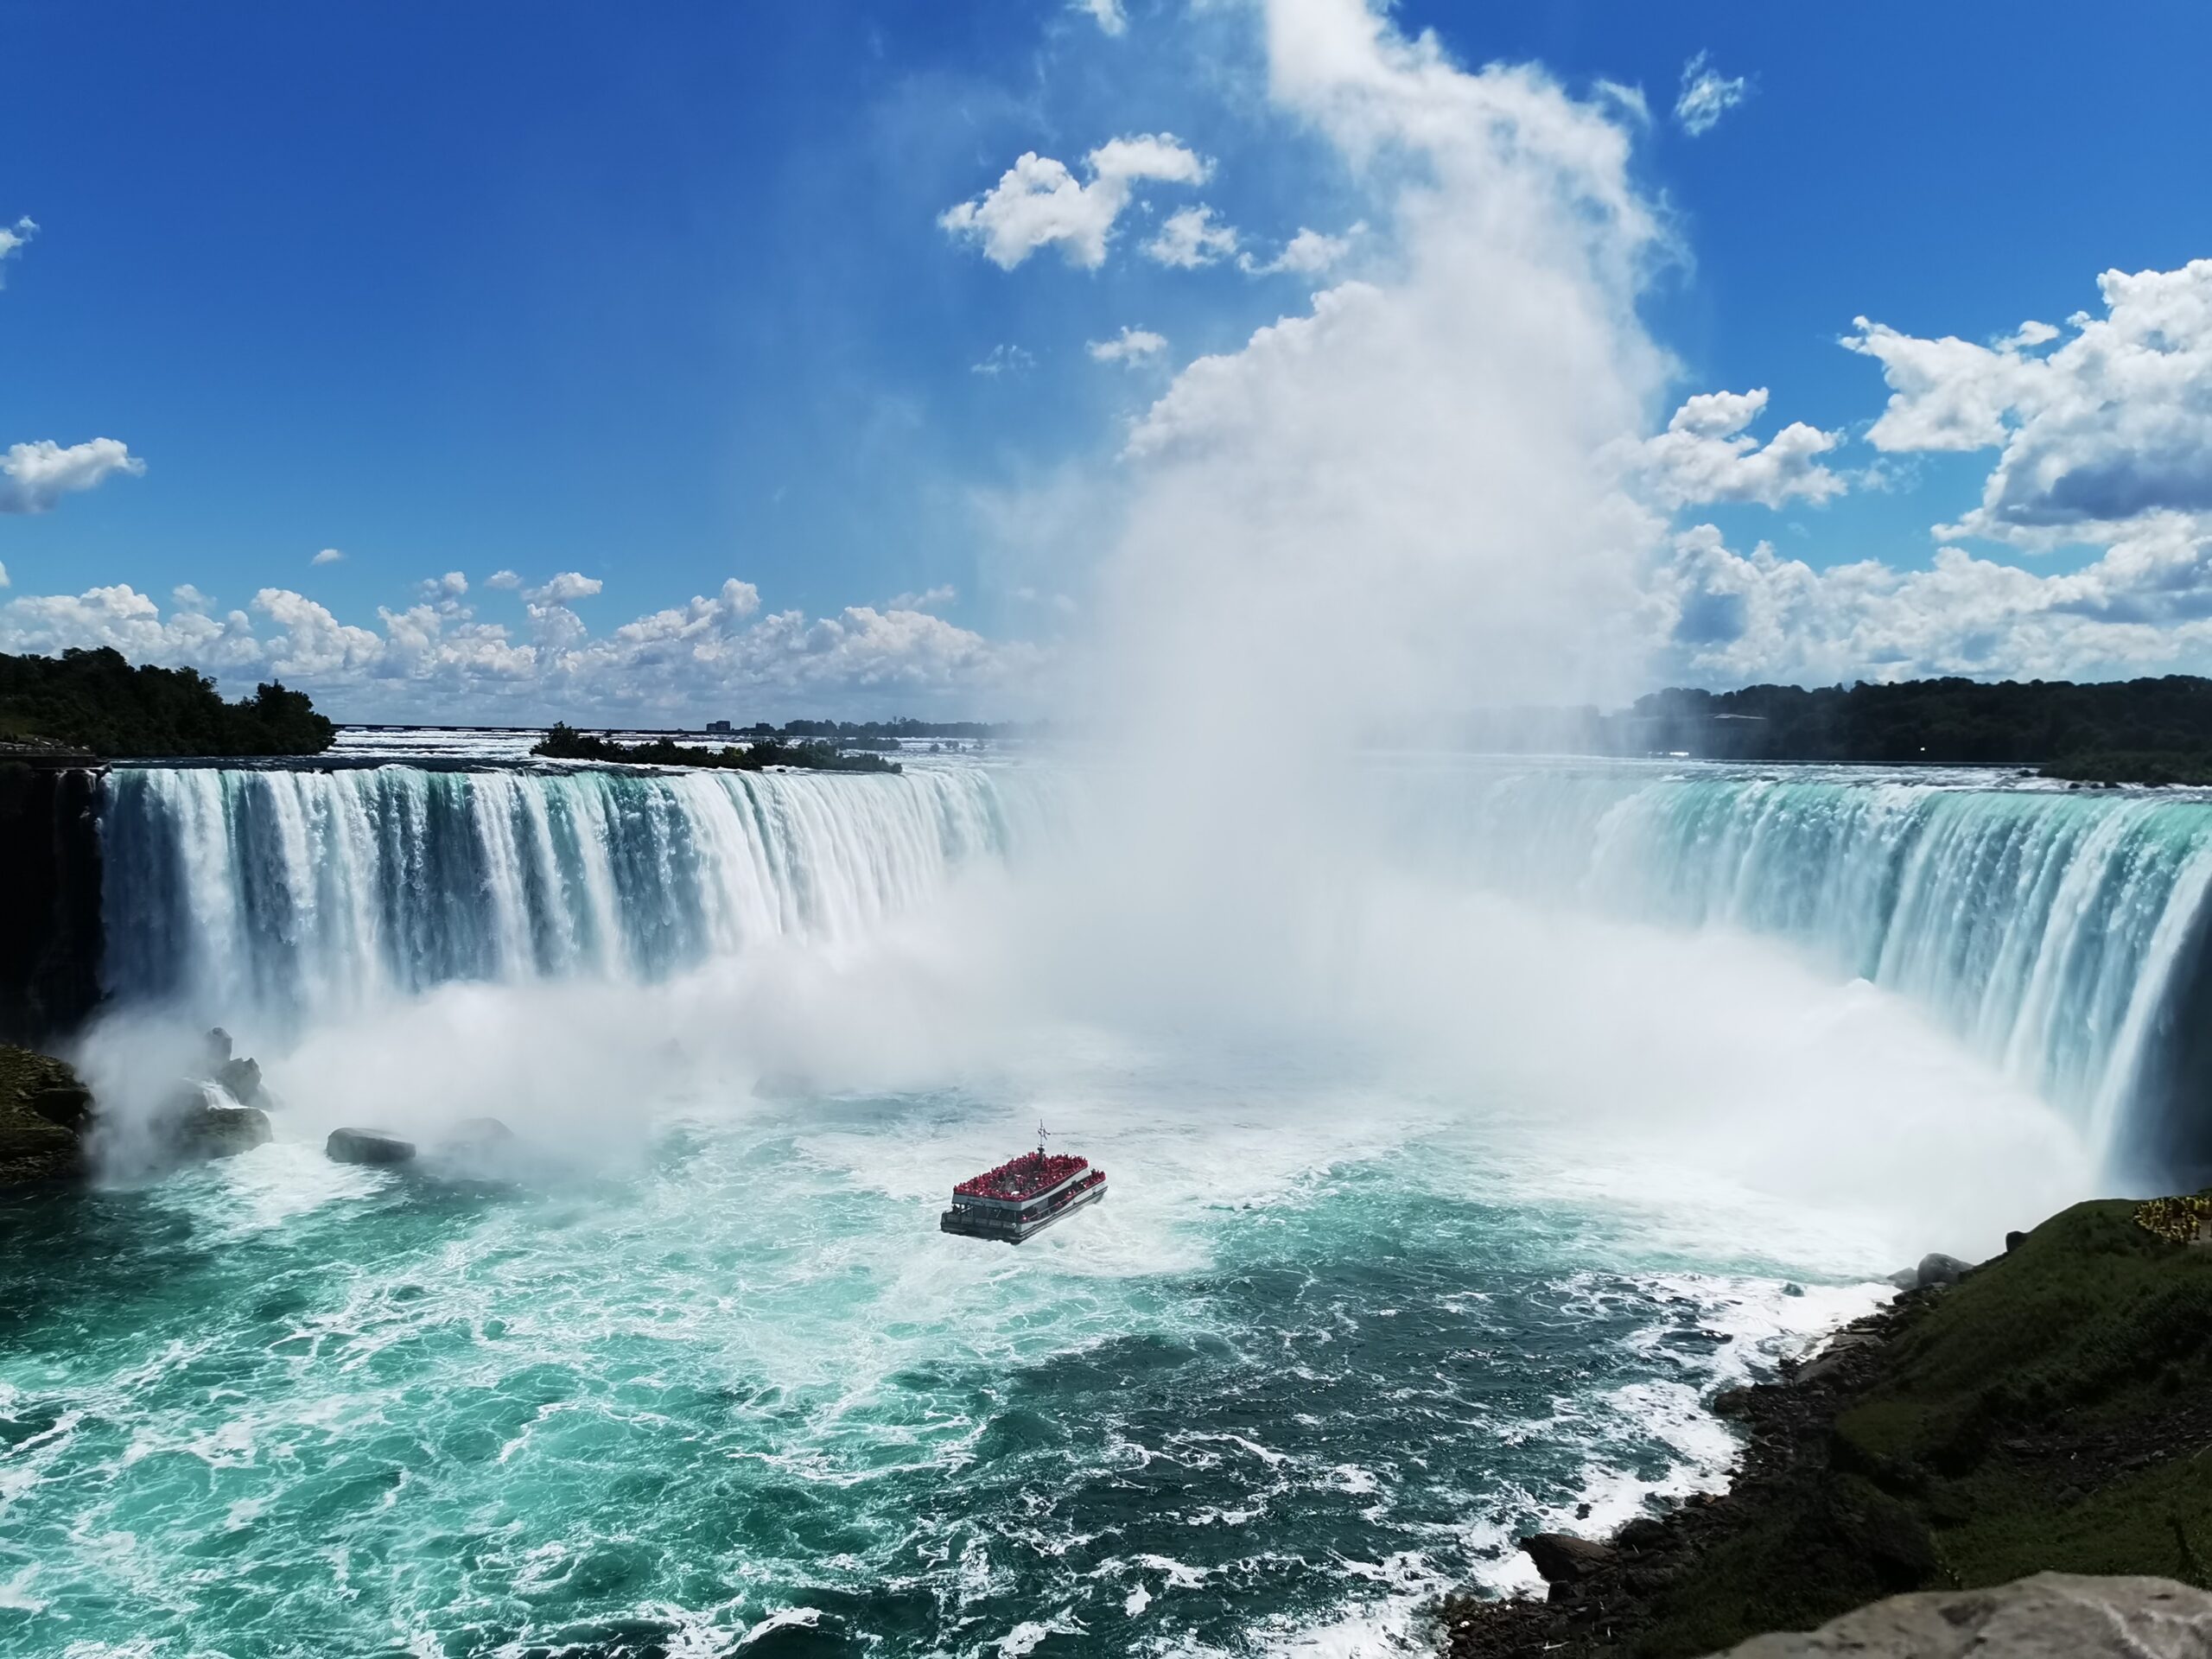 Cascate del Niagara: dove sono, cosa vedere e informazioni utili